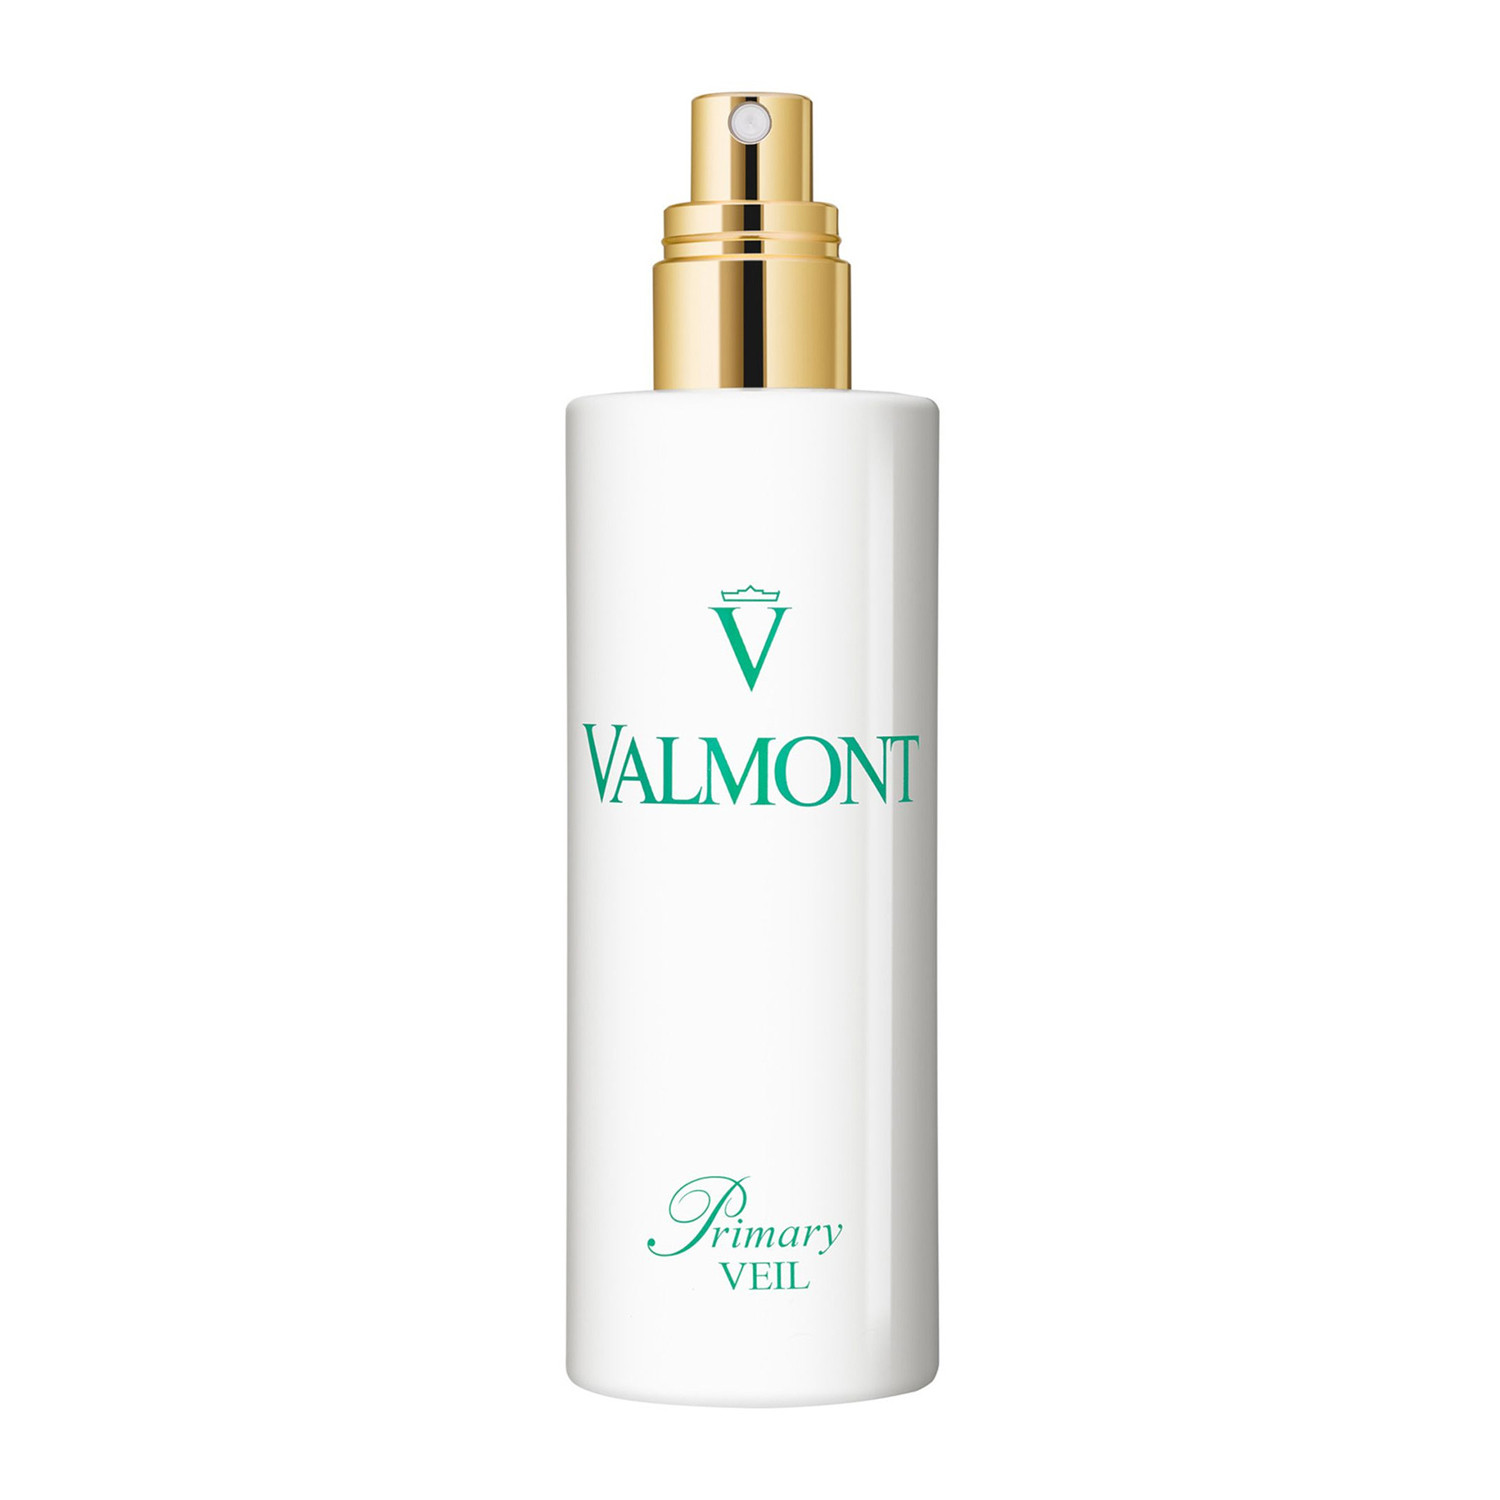 Отзывы о Valmont Primary Veil - Успокаивающий балансирующий спрей